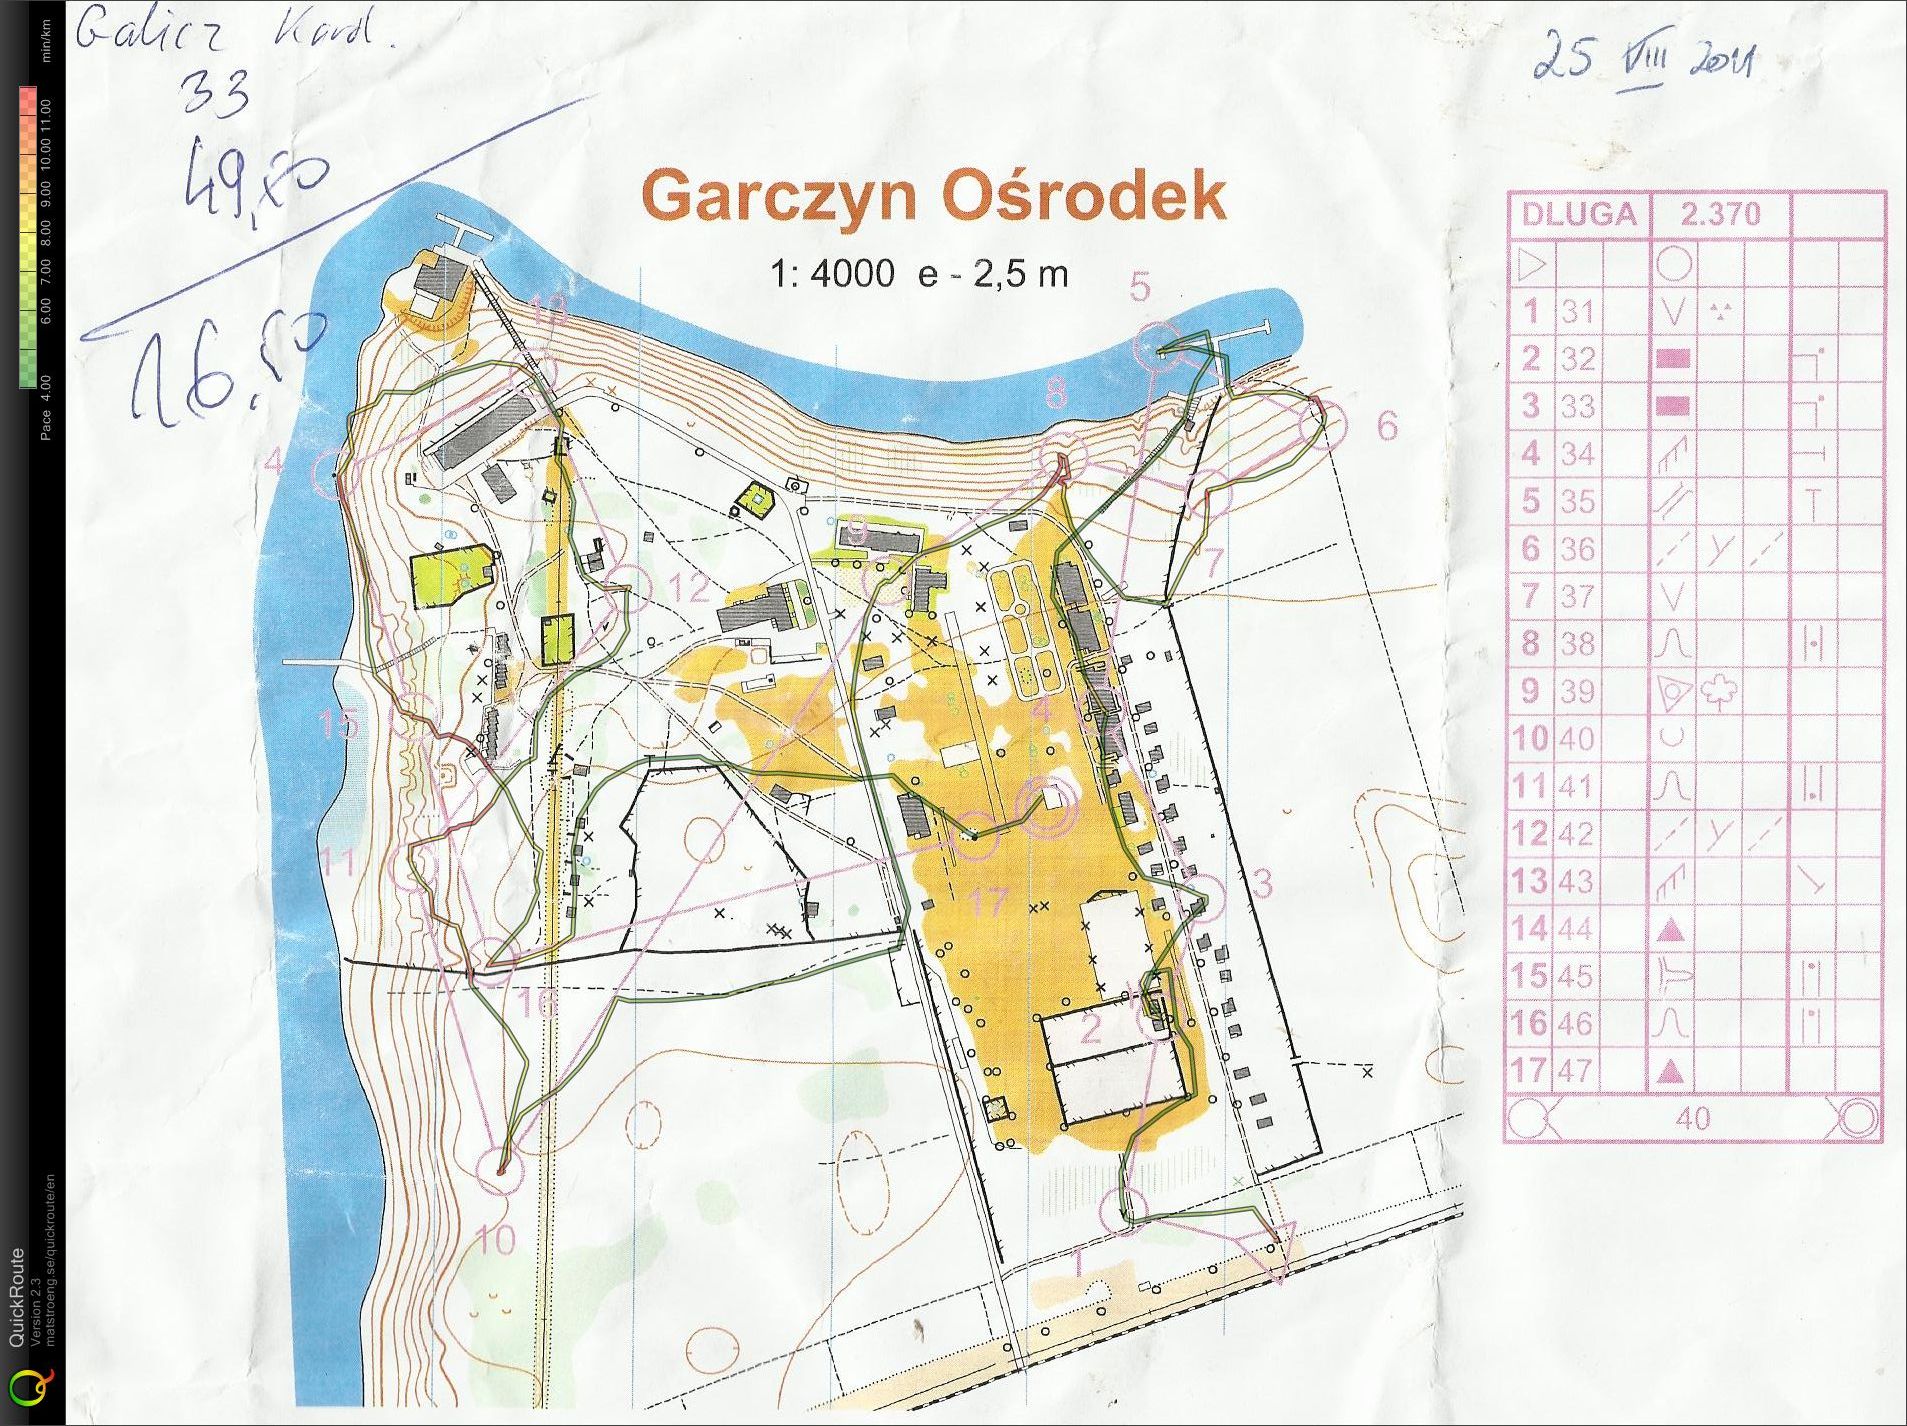 Trening - obóz Garczyn (25.08.2011)